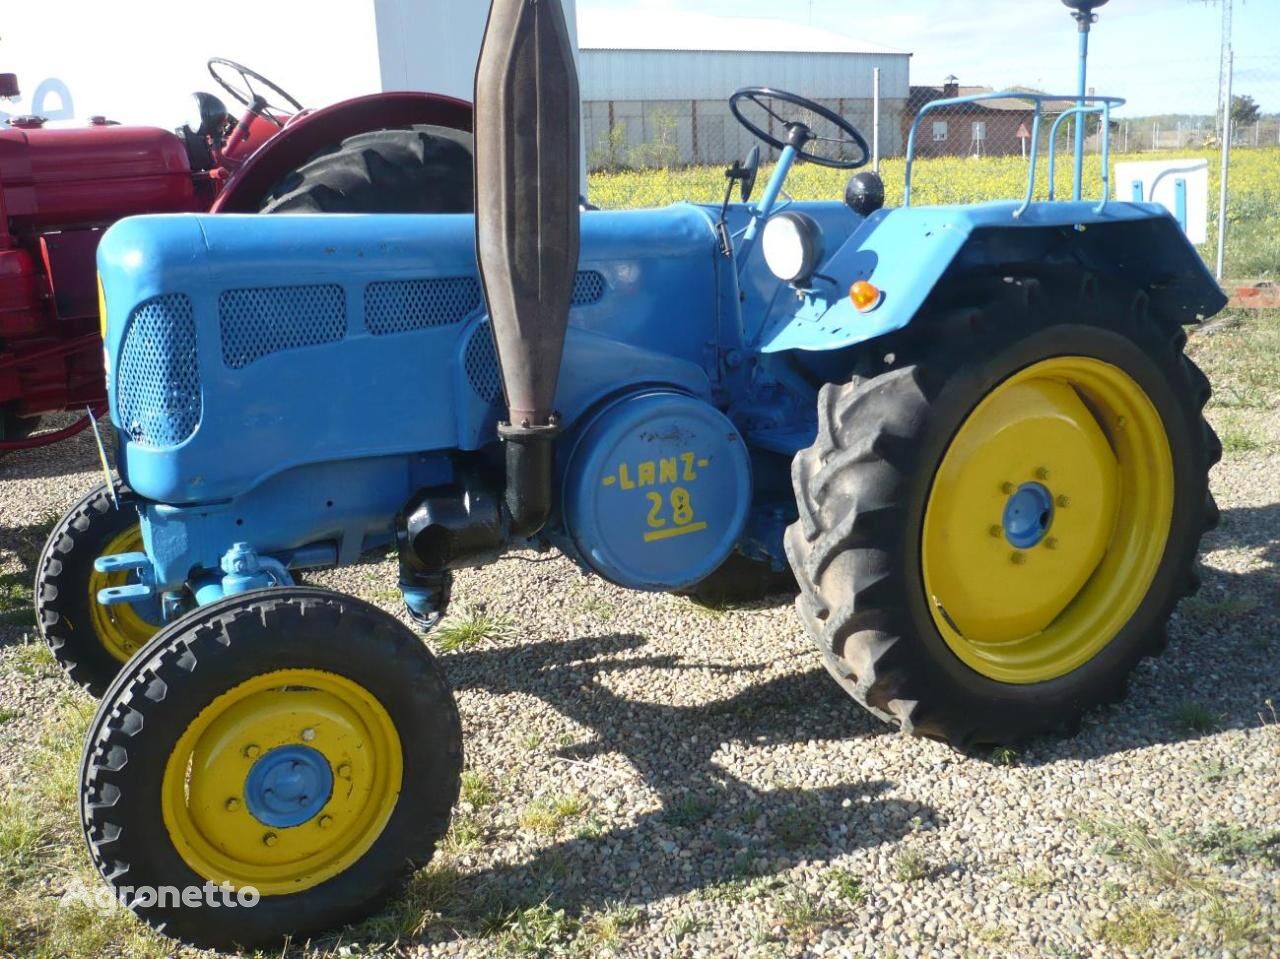 John Deere D2816 wheel tractor